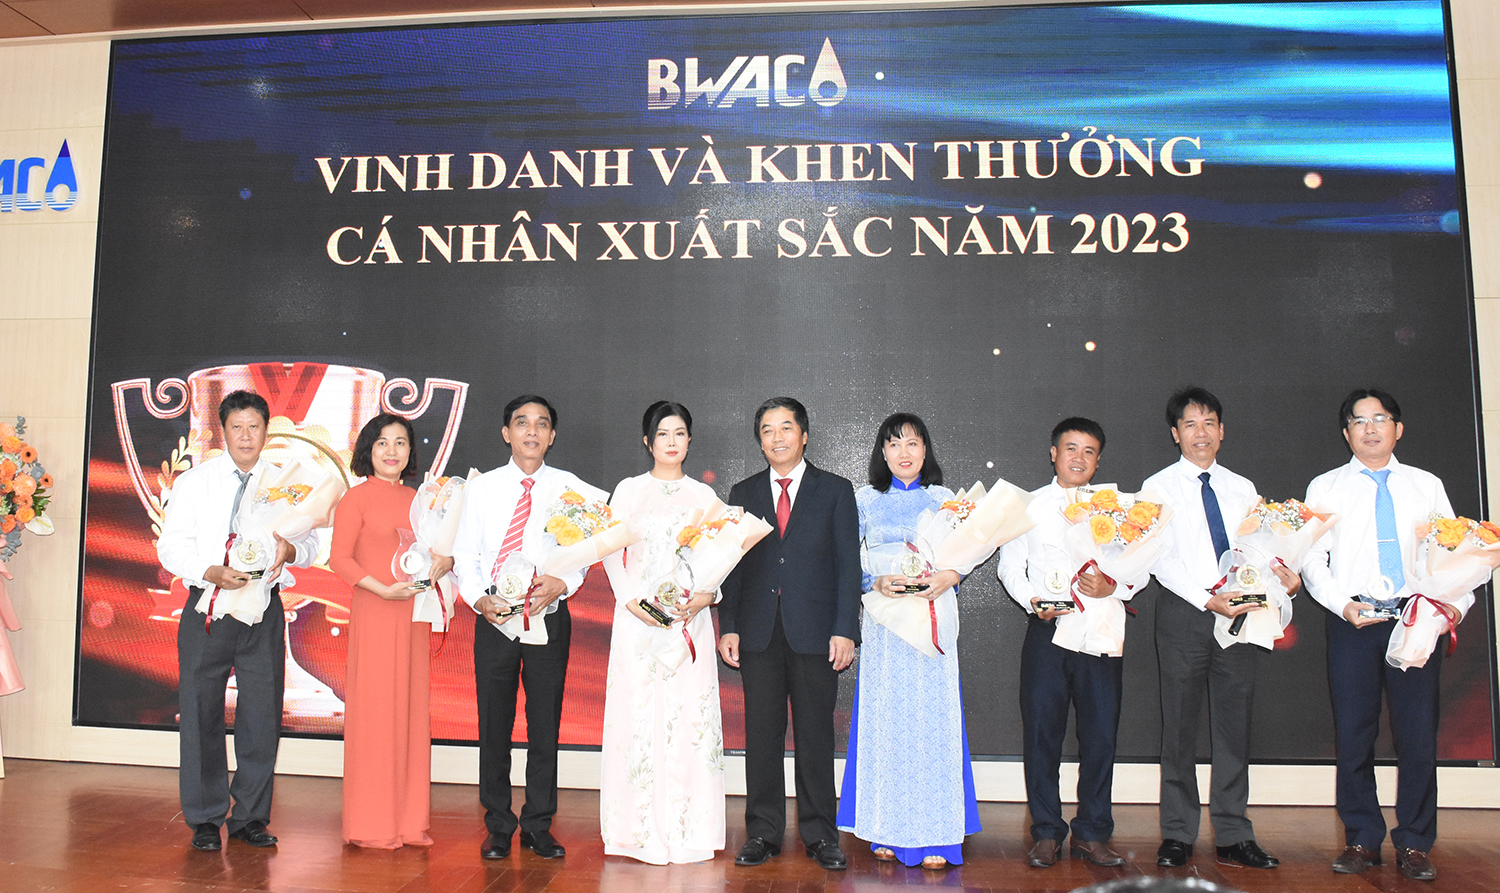 Ông Nguyễn Cảnh Tùng, Phó Tổng Giám đóc BWACO tặng hoa và kỷ niệm chương cho các cá nhân xuất sắc năm 2023